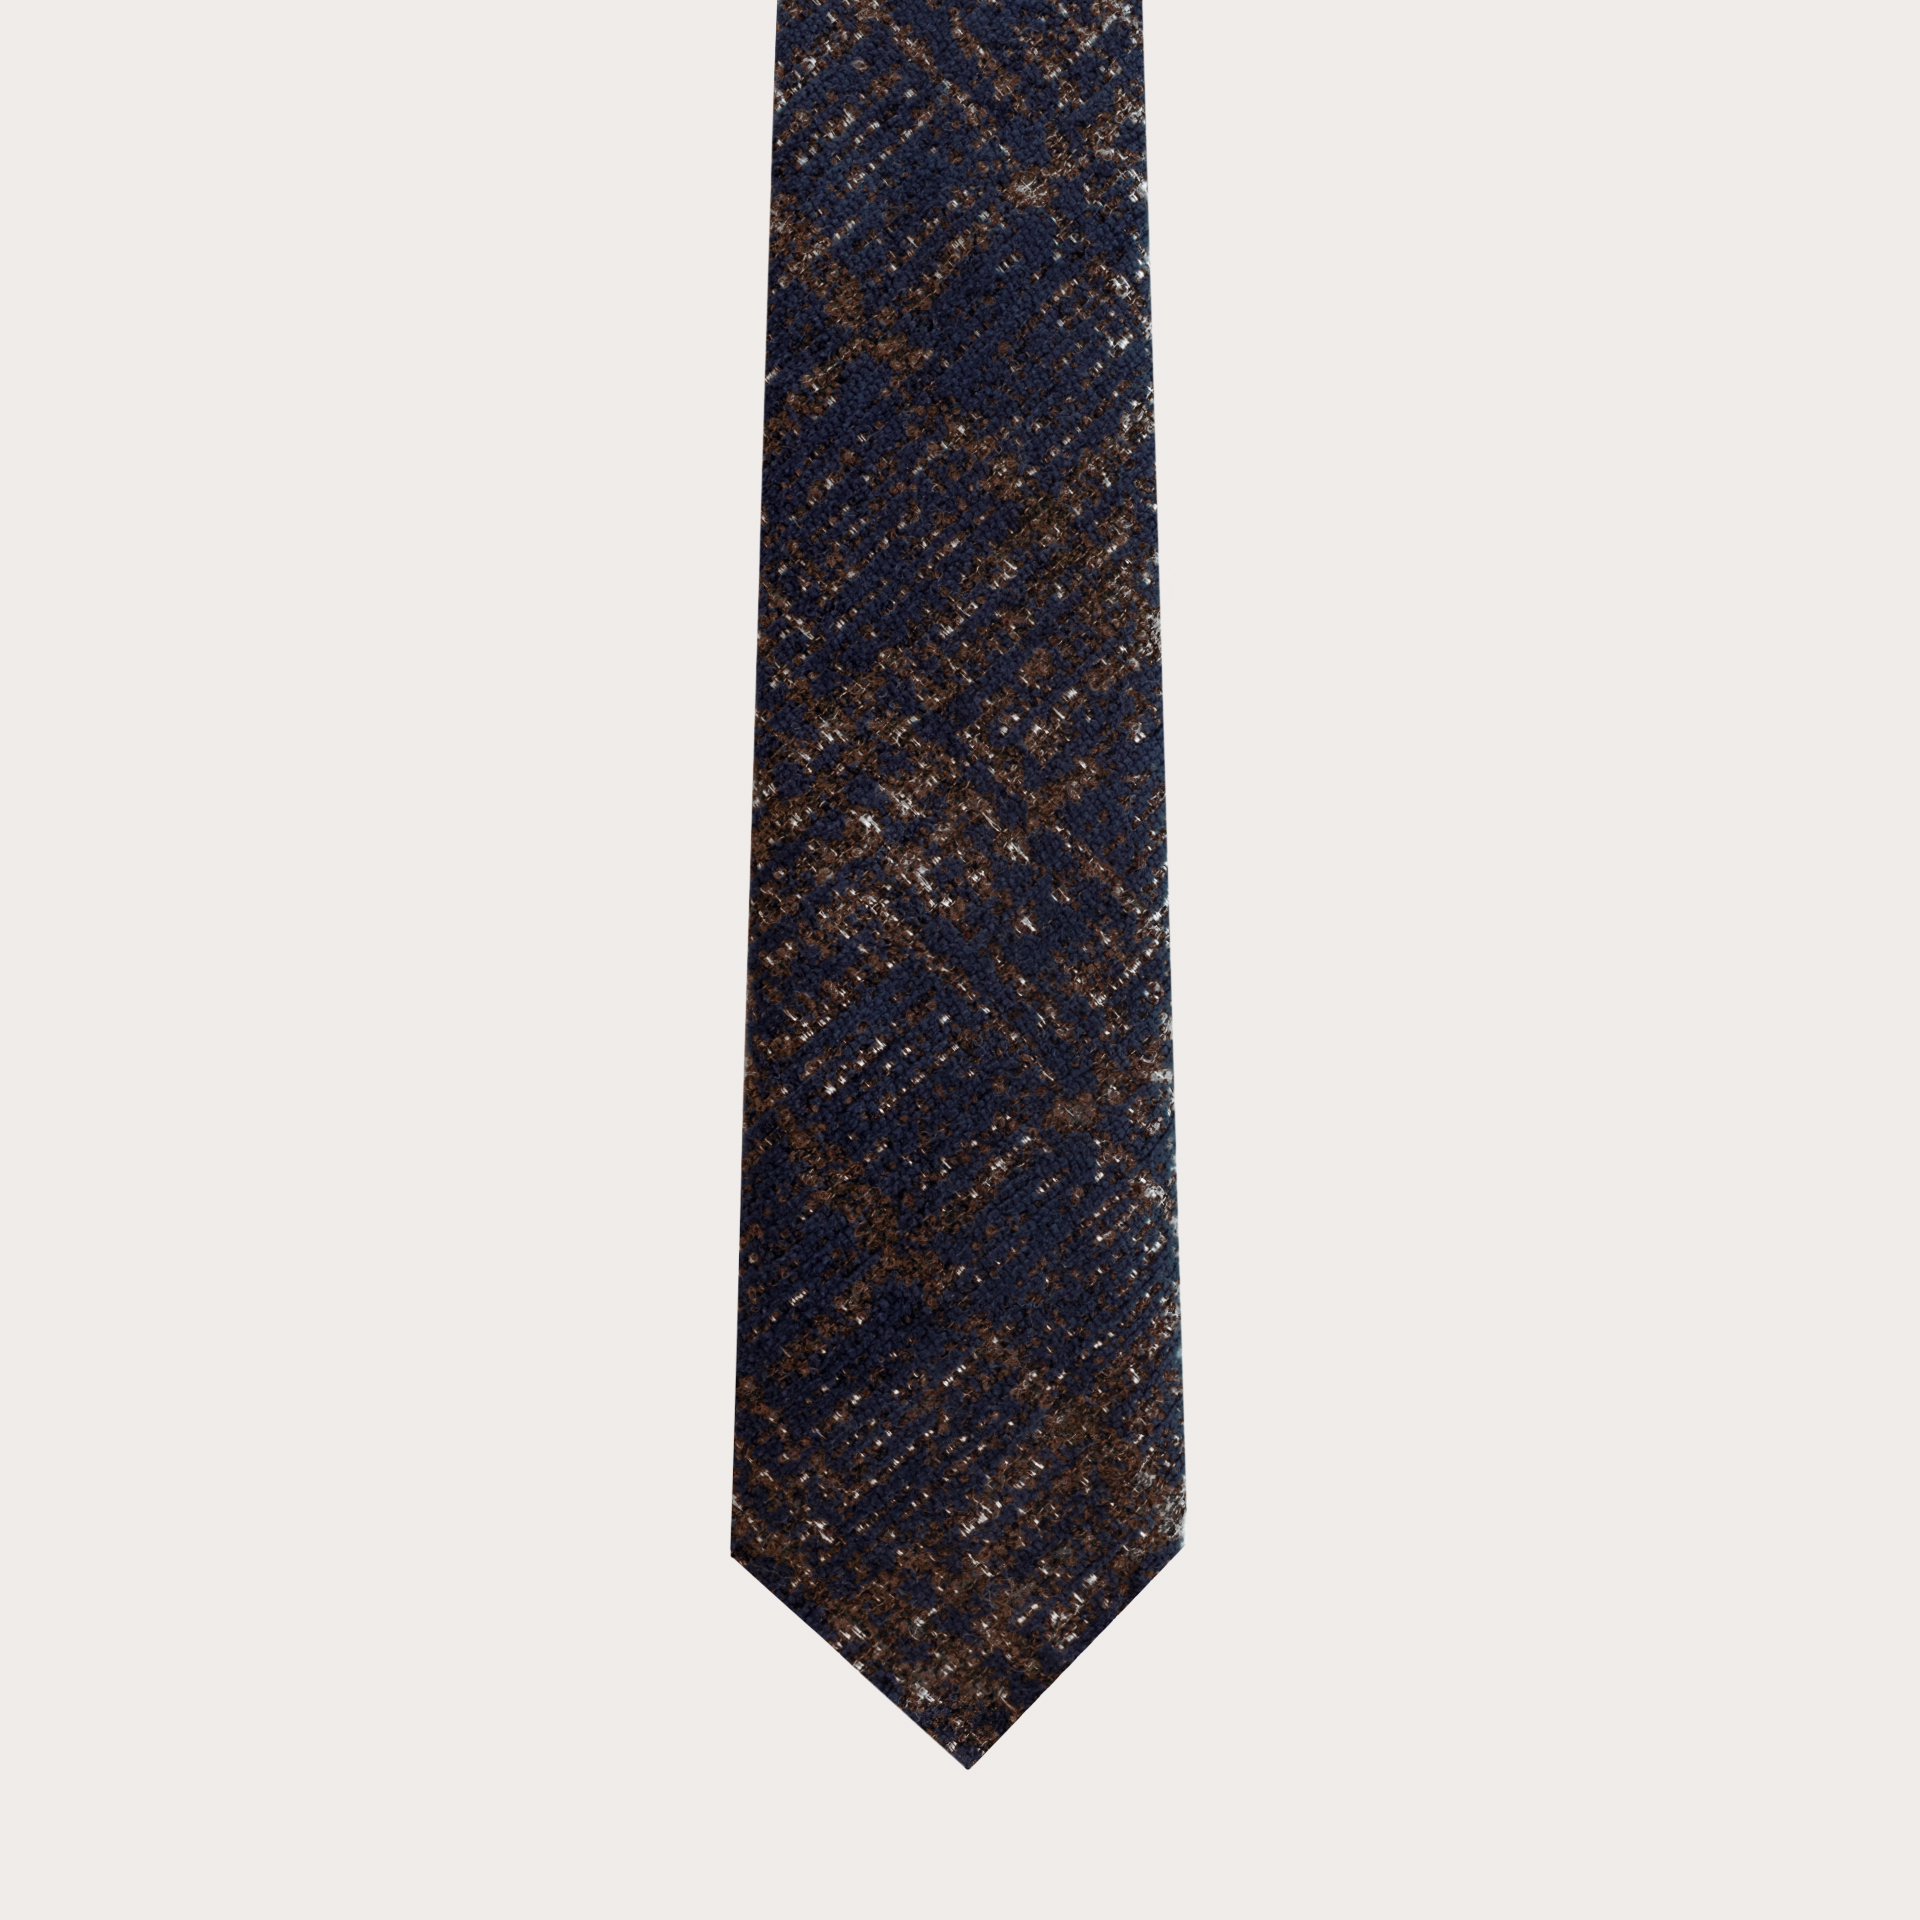 Corbata sin forro en lana y seda, tartán azul y marrón